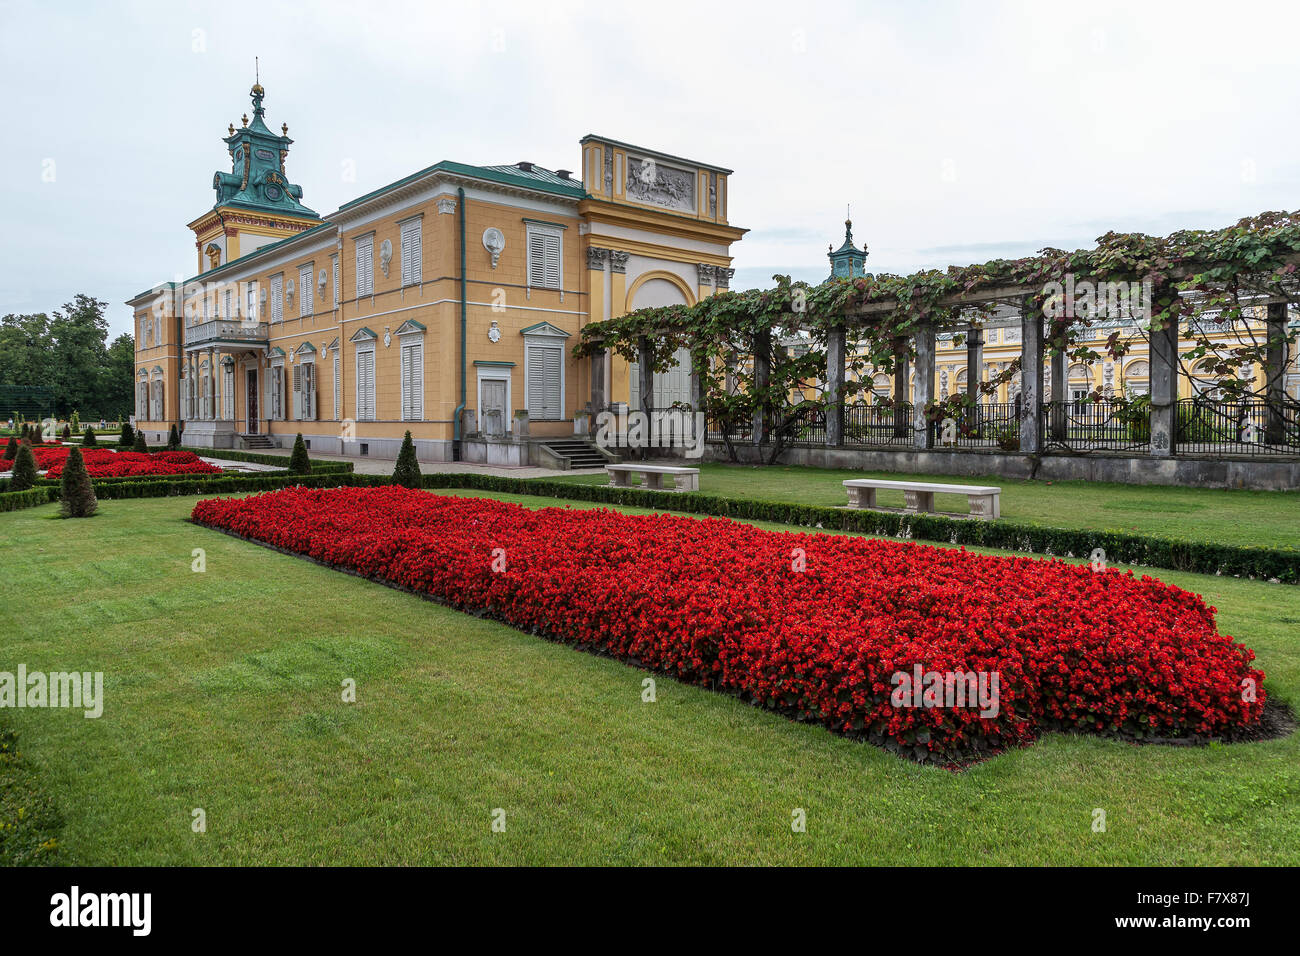 Le Palais Royel à Wilanow est l'un des monuments culturels les plus importants de Pologne. Waszawa, Pologne. Banque D'Images